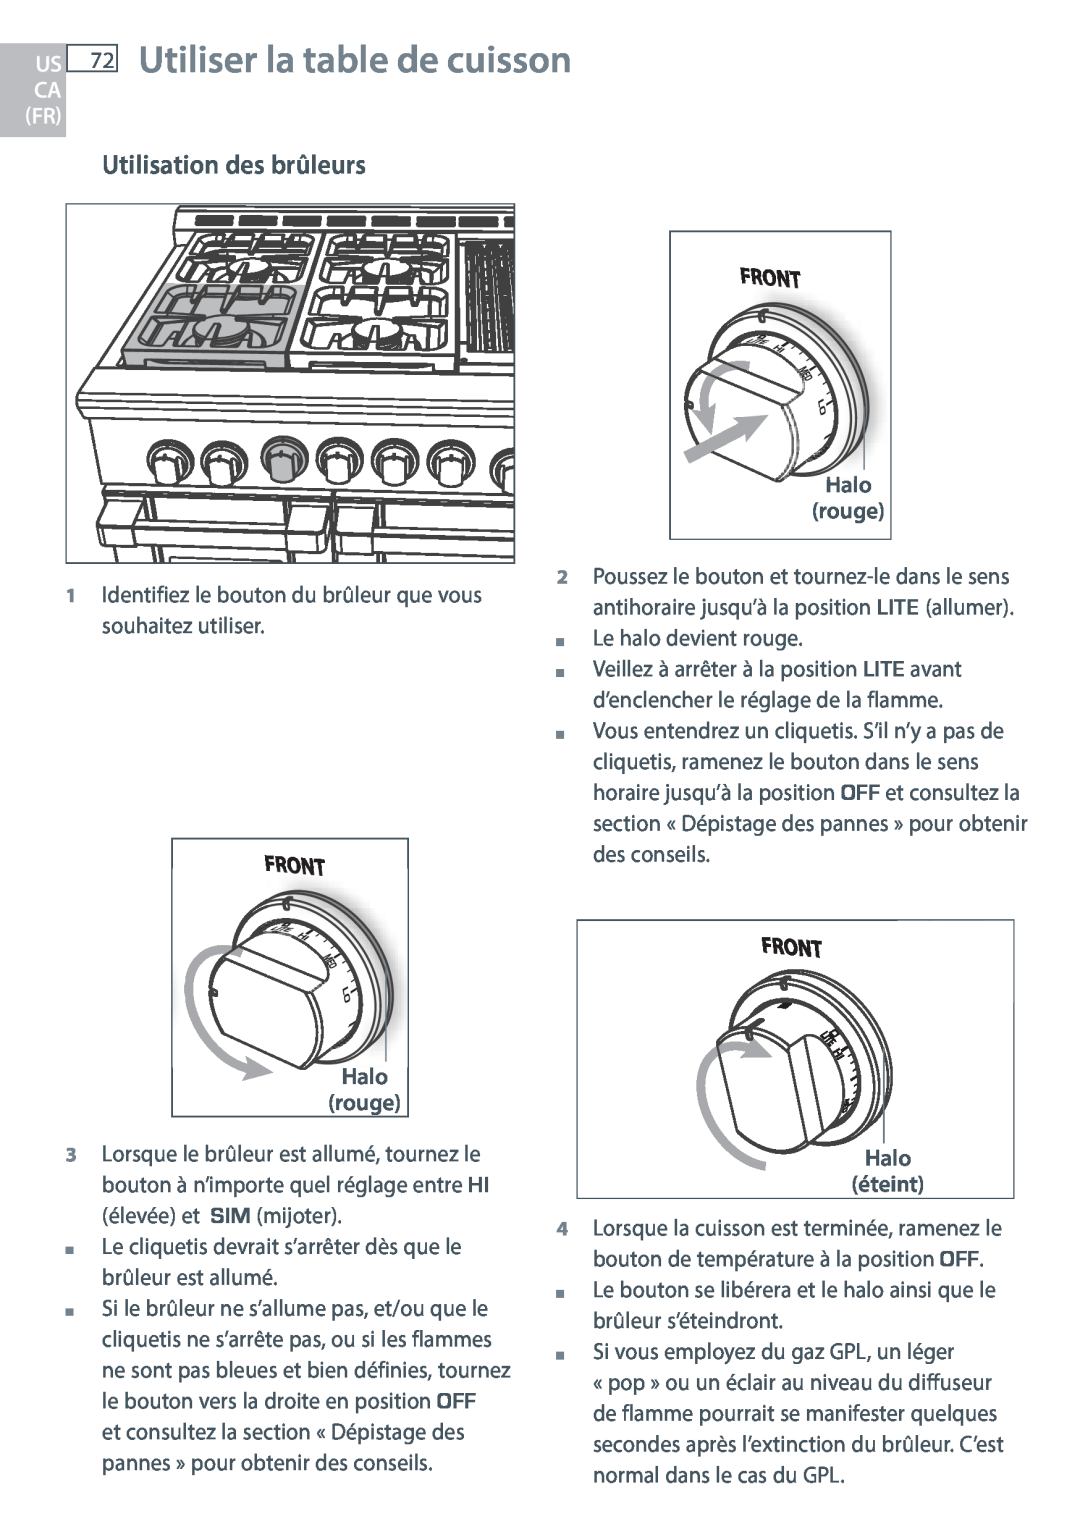 DCS RDU/RDV, RGUC/RGVC, RGY/RGV manual US 72 Utiliser la table de cuisson, Utilisation des brûleurs, Ca Fr 